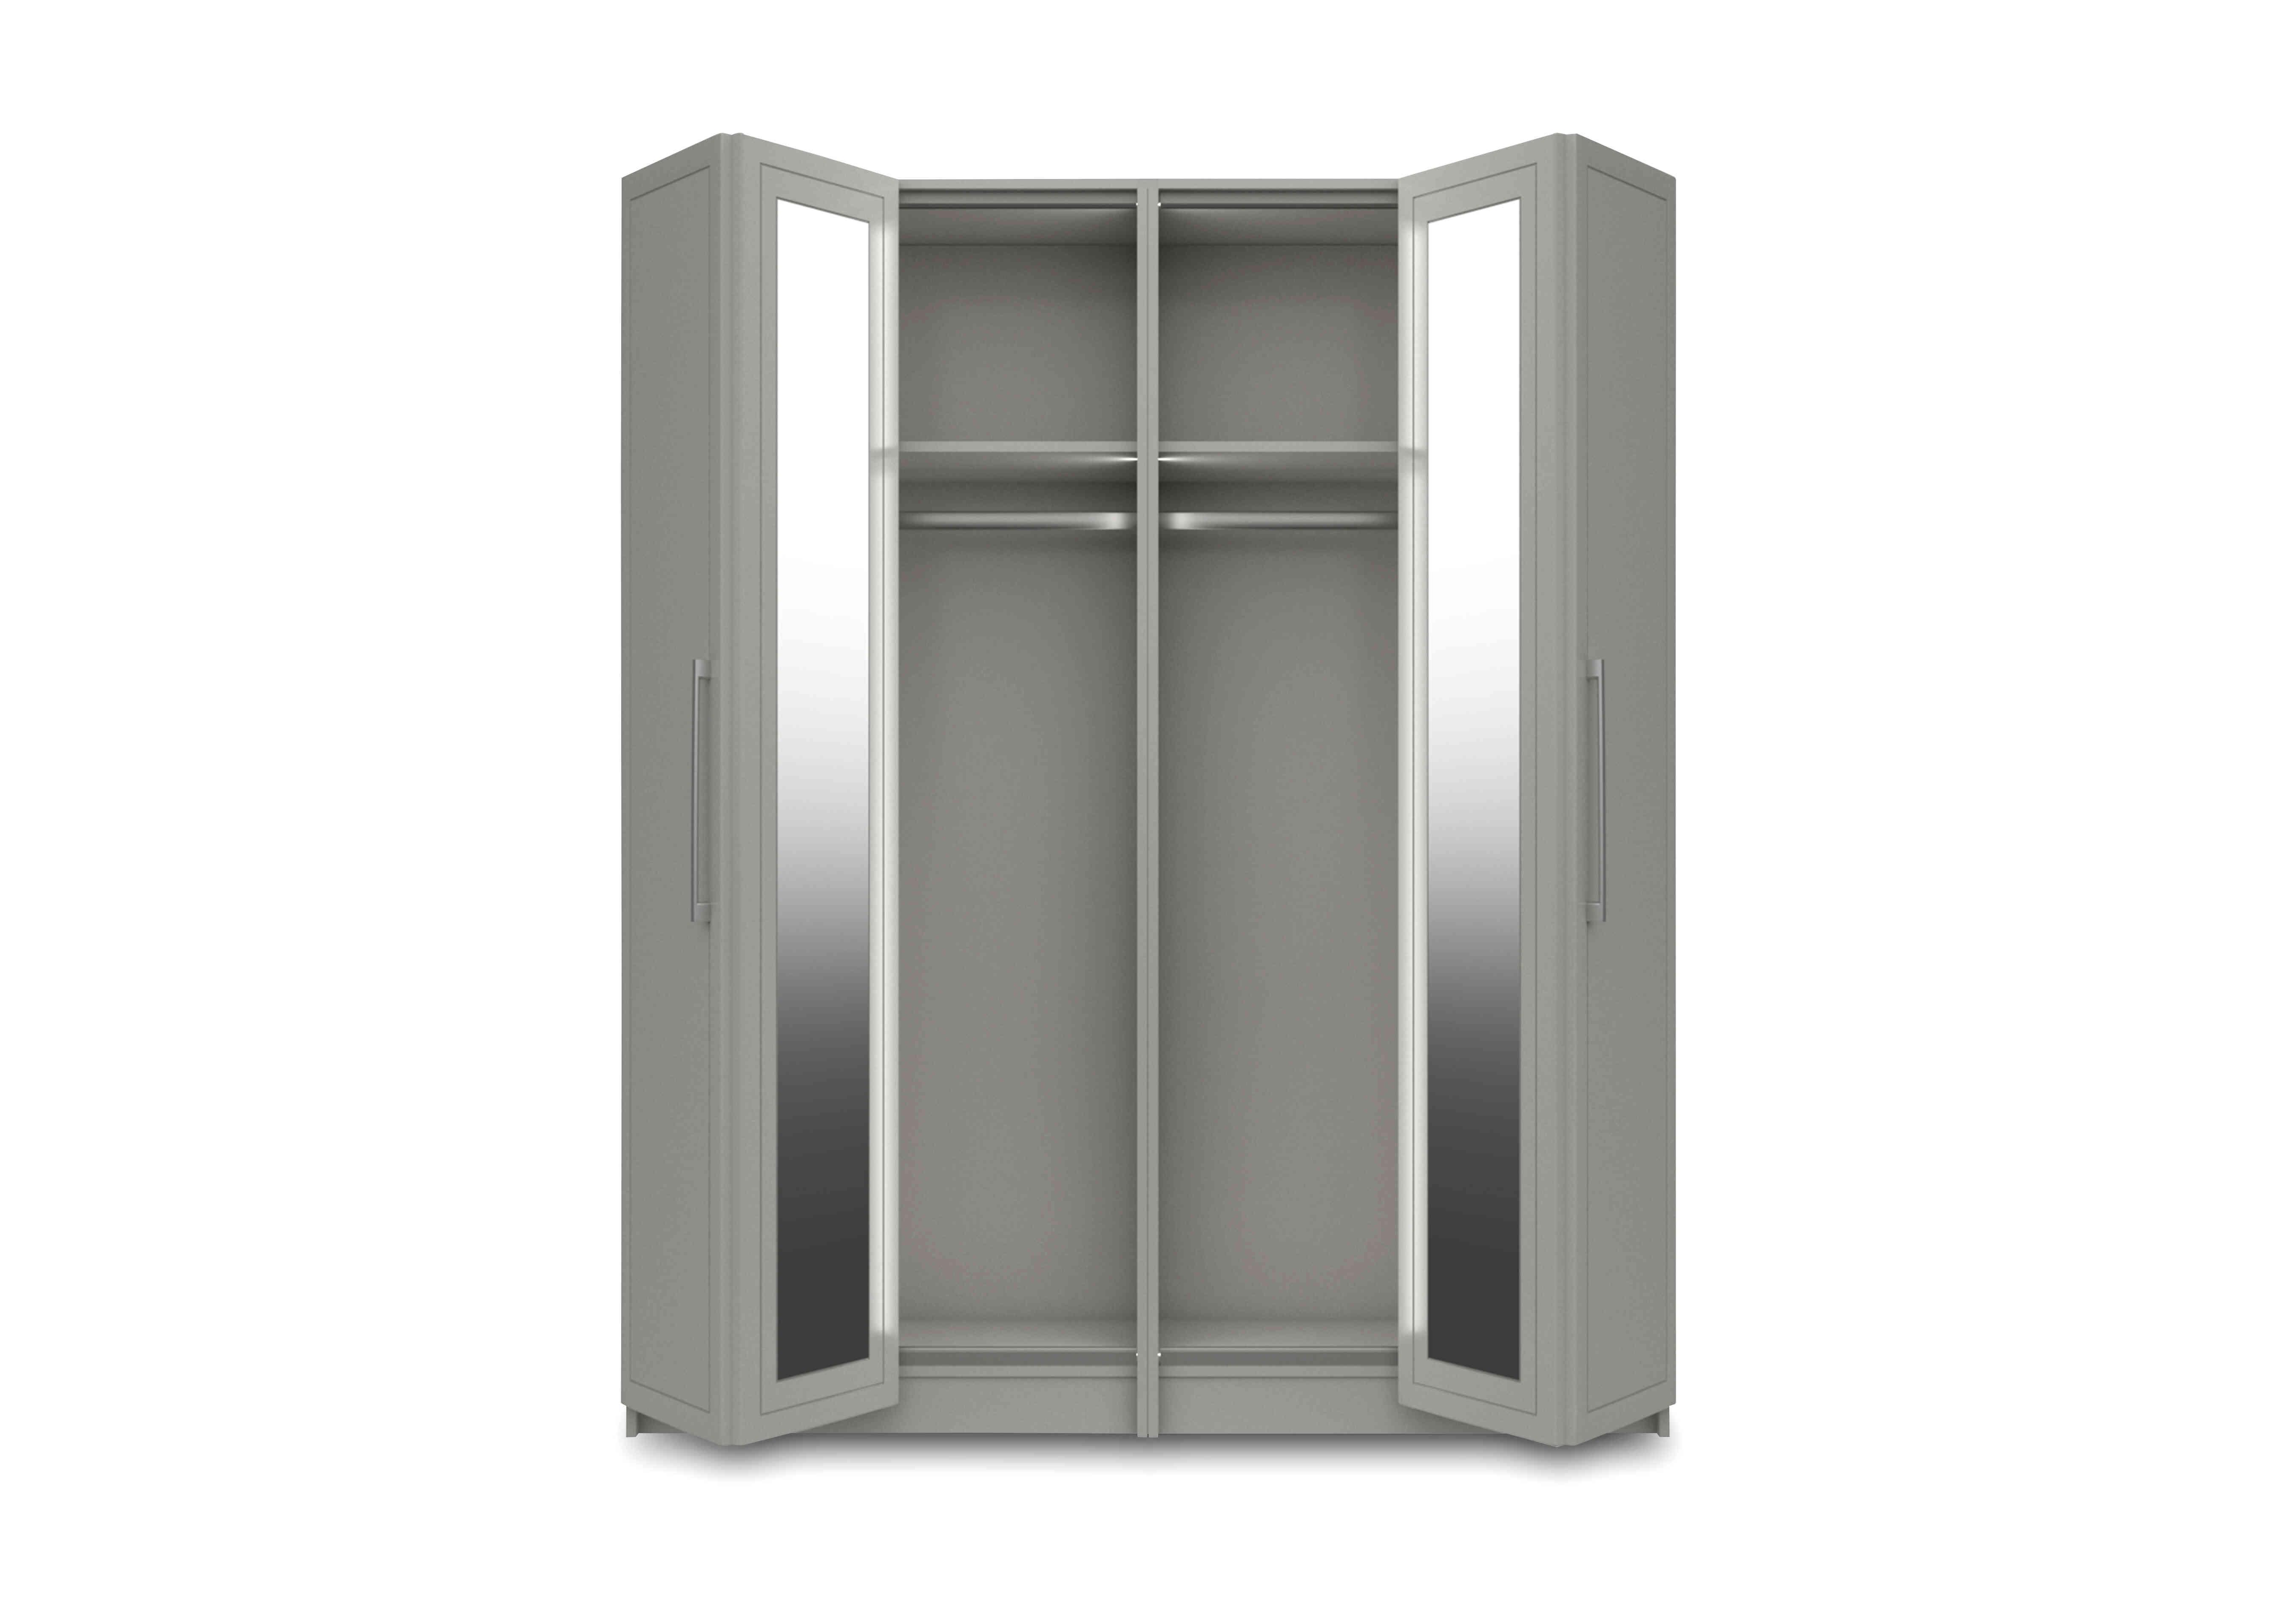 Bexley 4 Door Bifold Wardrobe with Mirror Door and Interior Lighting in Light Grey Gloss on Furniture Village